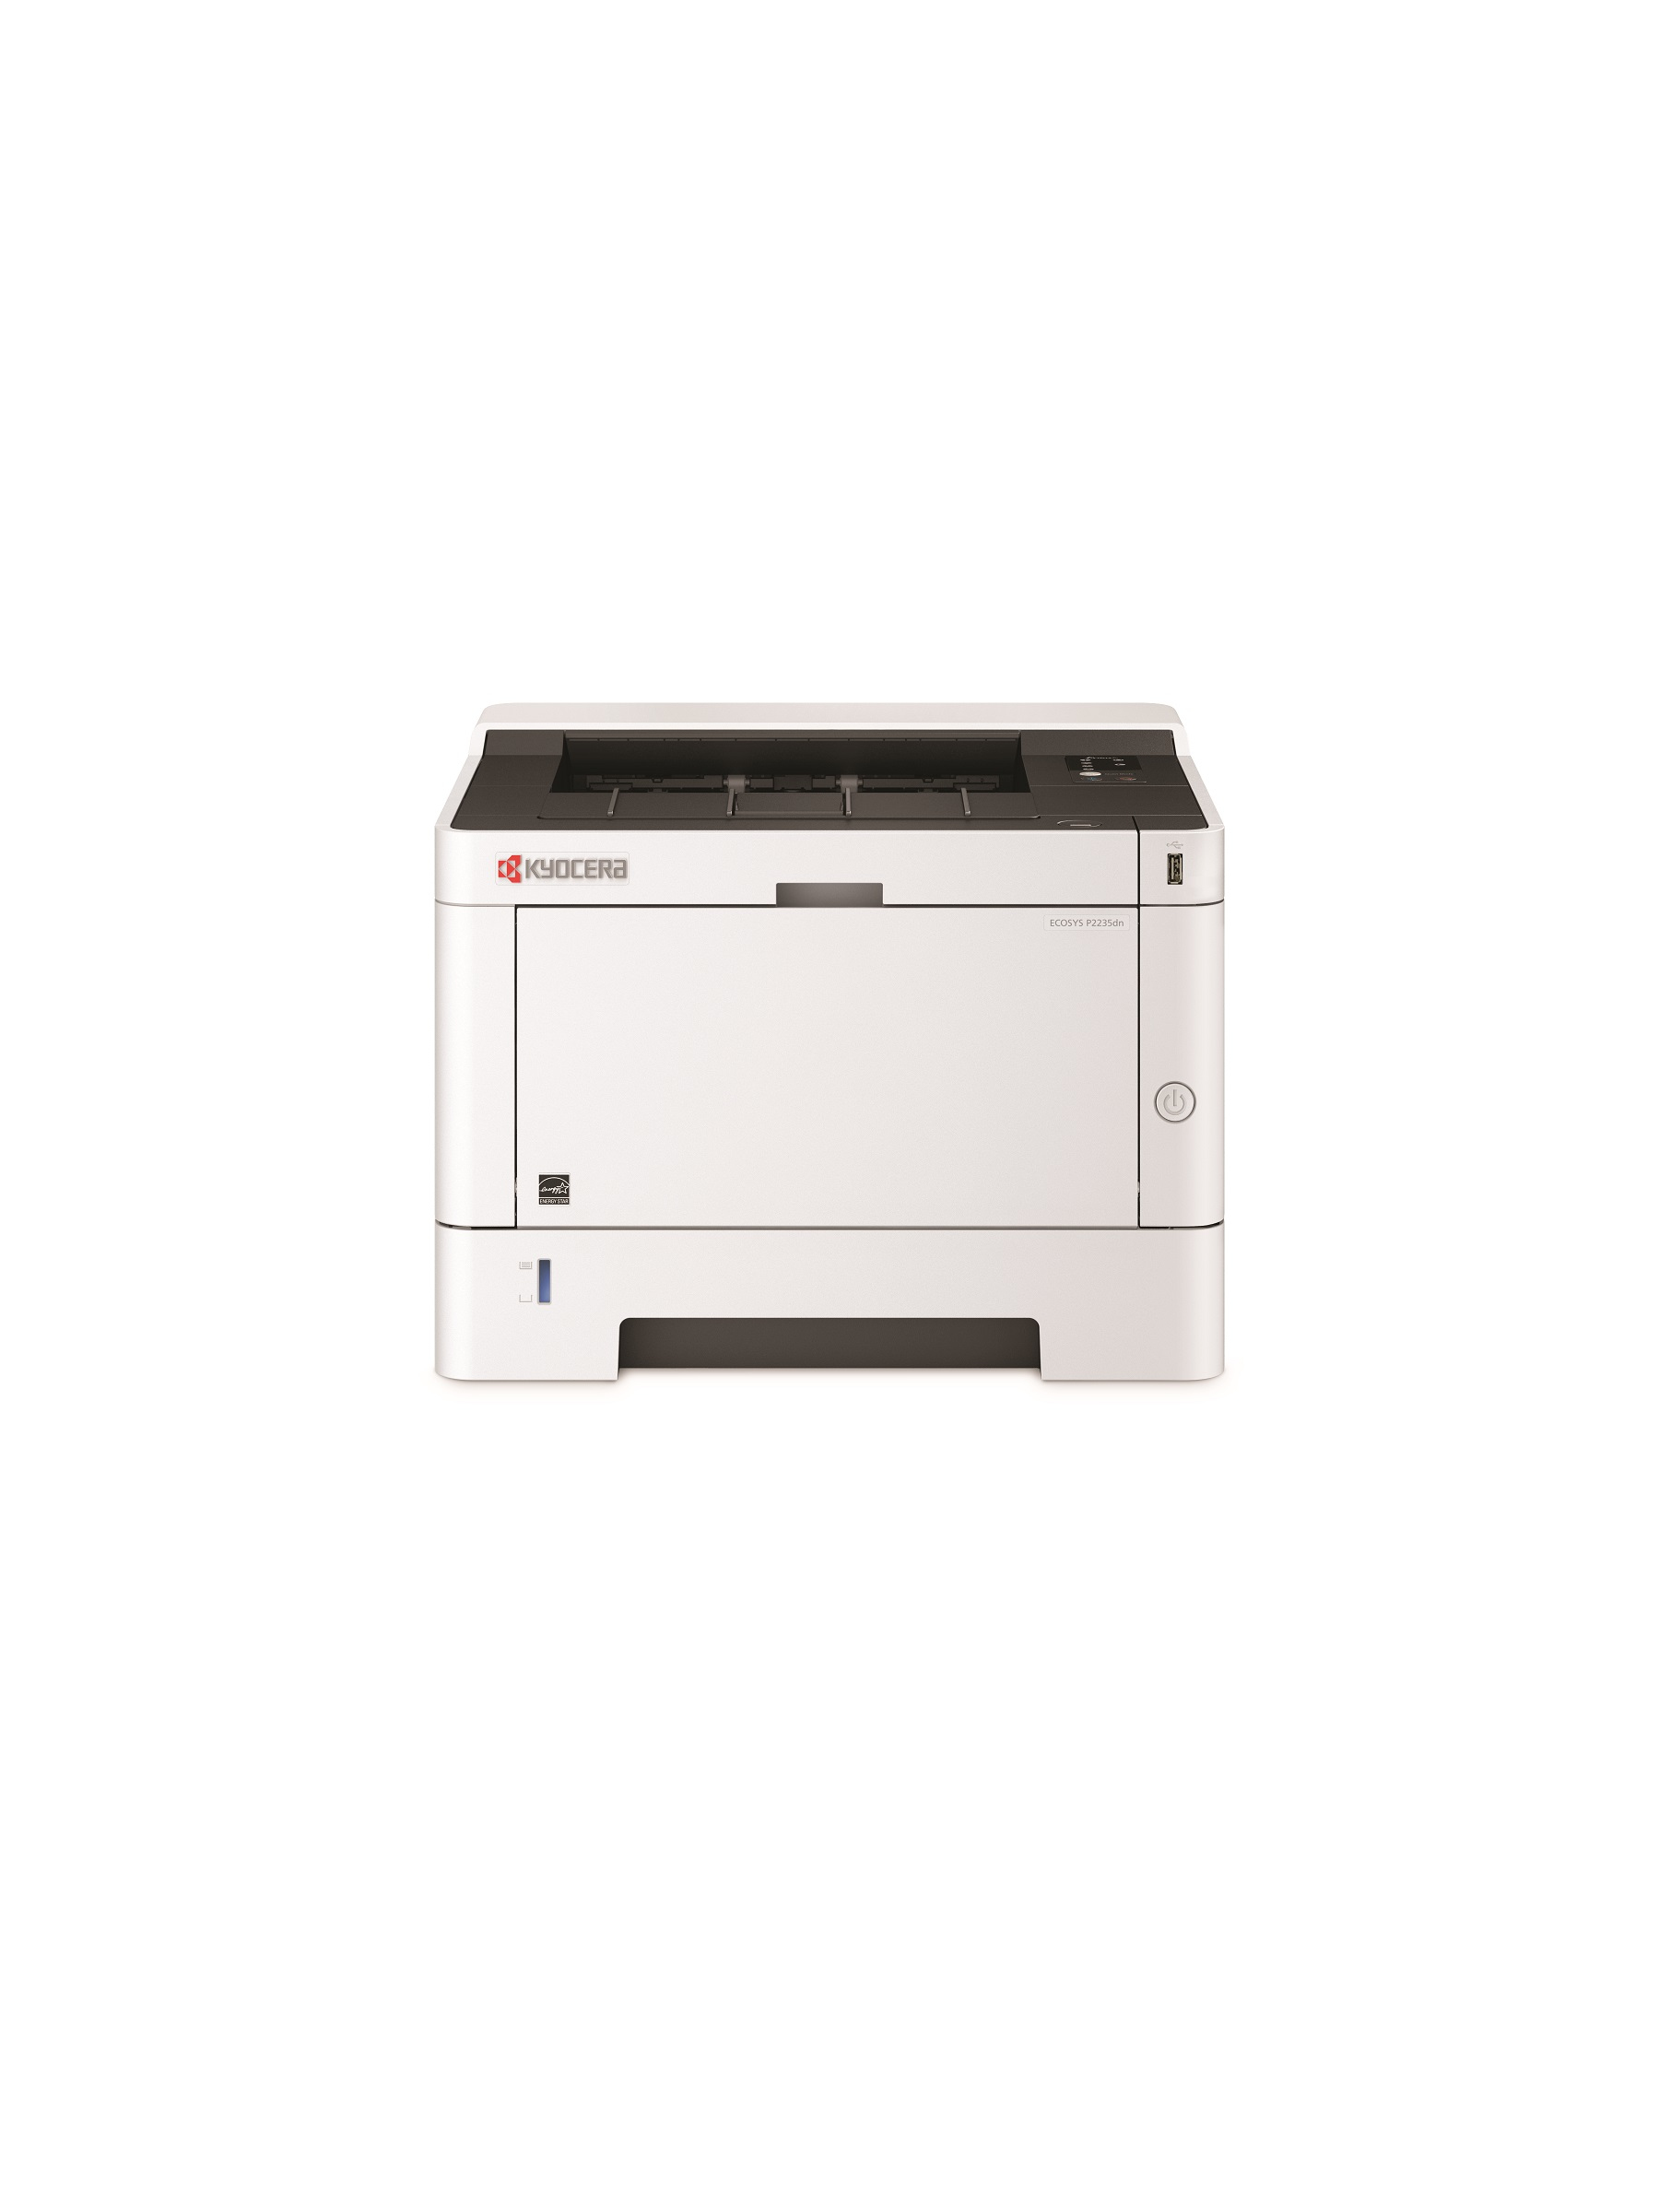 KYOCERA 870B61102RV3NL2 laser printer